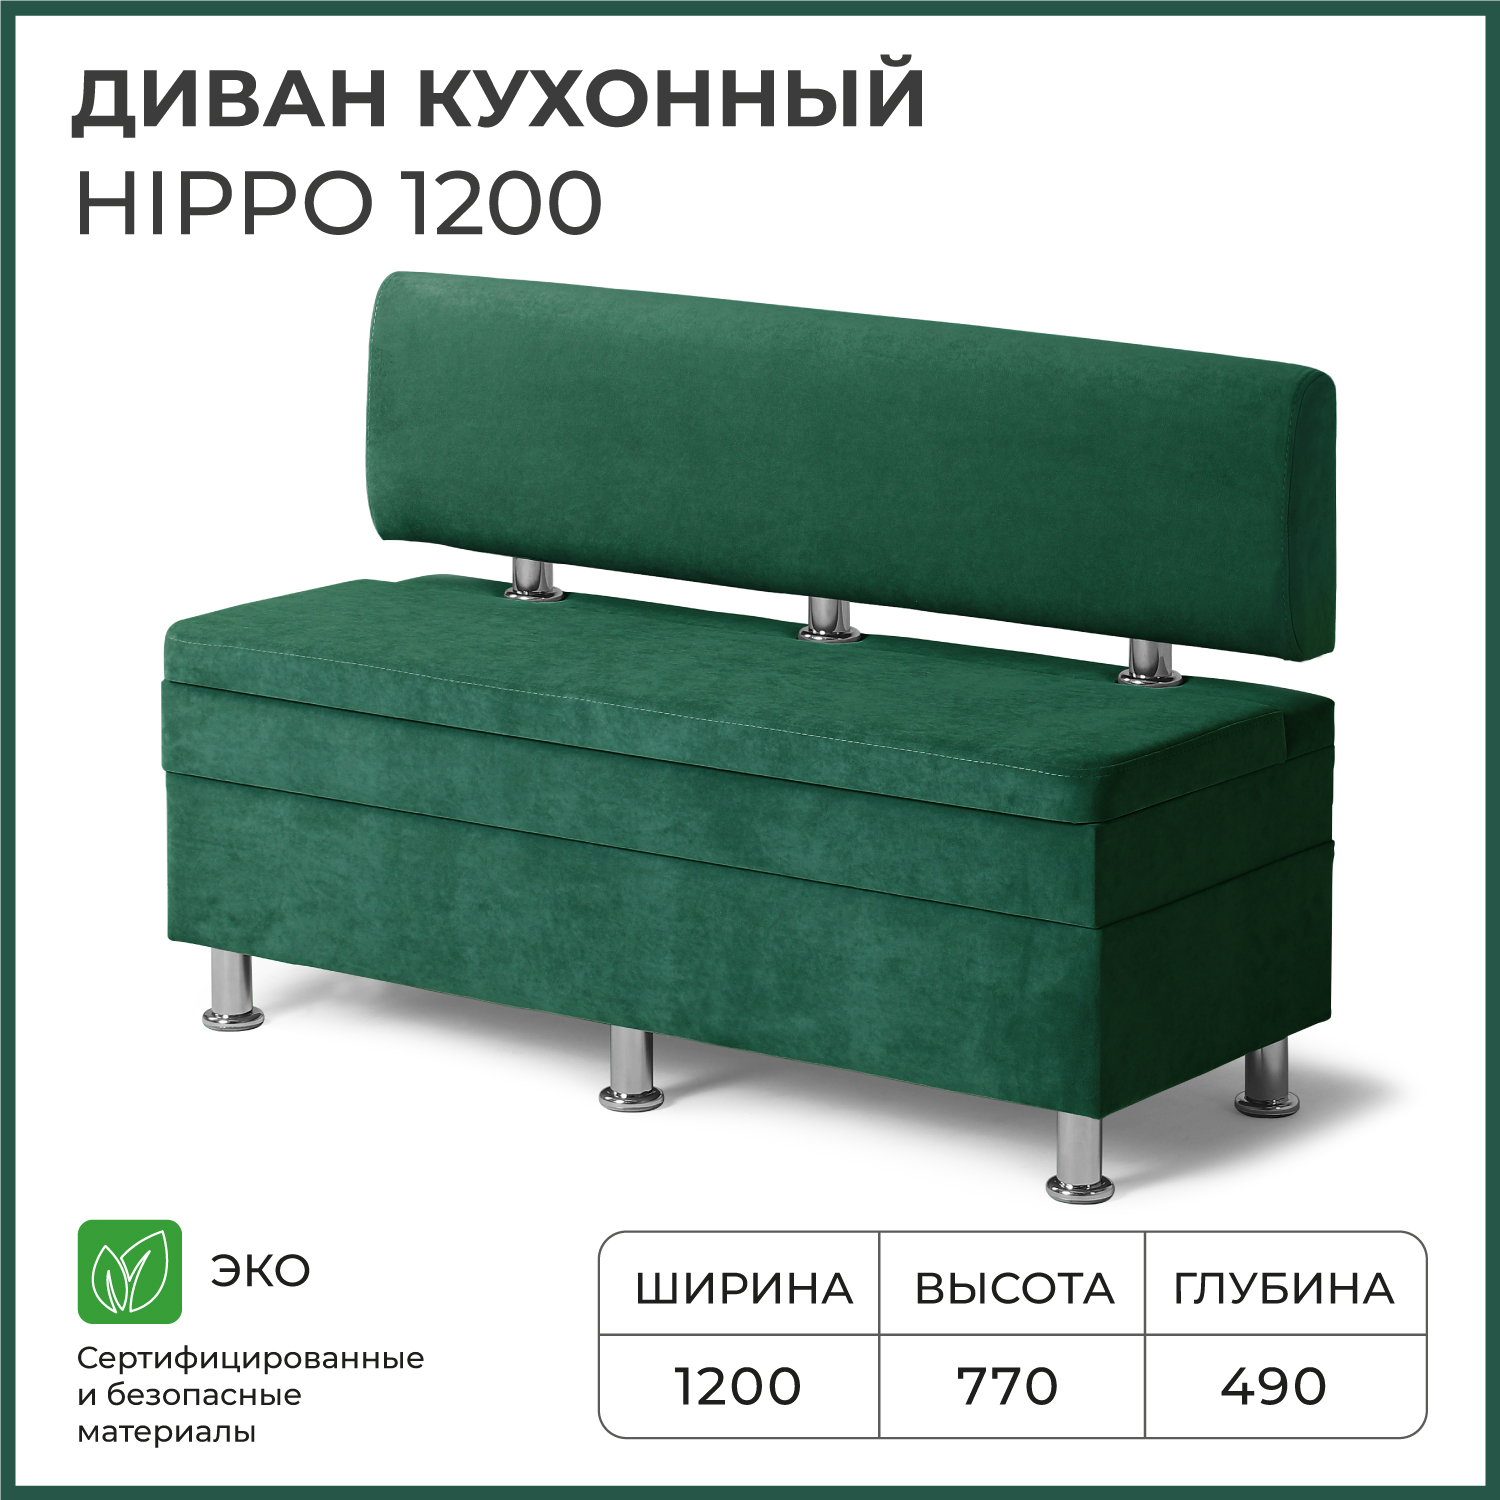 Диван кухонный НОРТА Hippo 1200х490х770, ящик для хранения 1168х420х274 зеленый - купить в Москве, цены на Мегамаркет | 600013686810